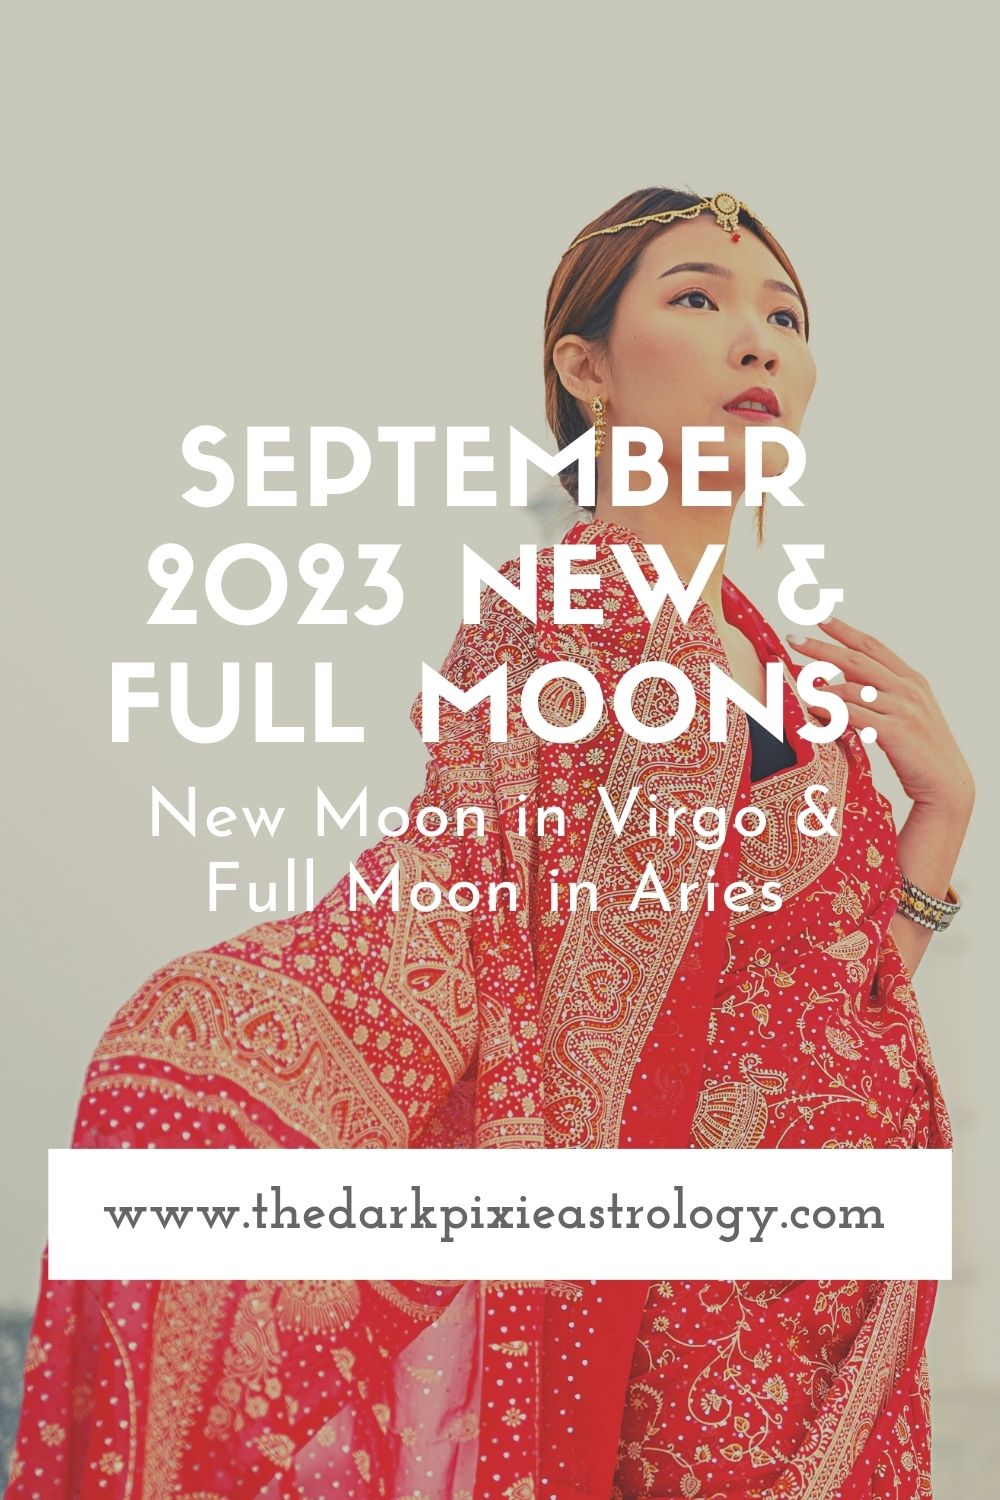 September 2023 New & Full Moons New Moon in Virgo & Full Moon in Aries